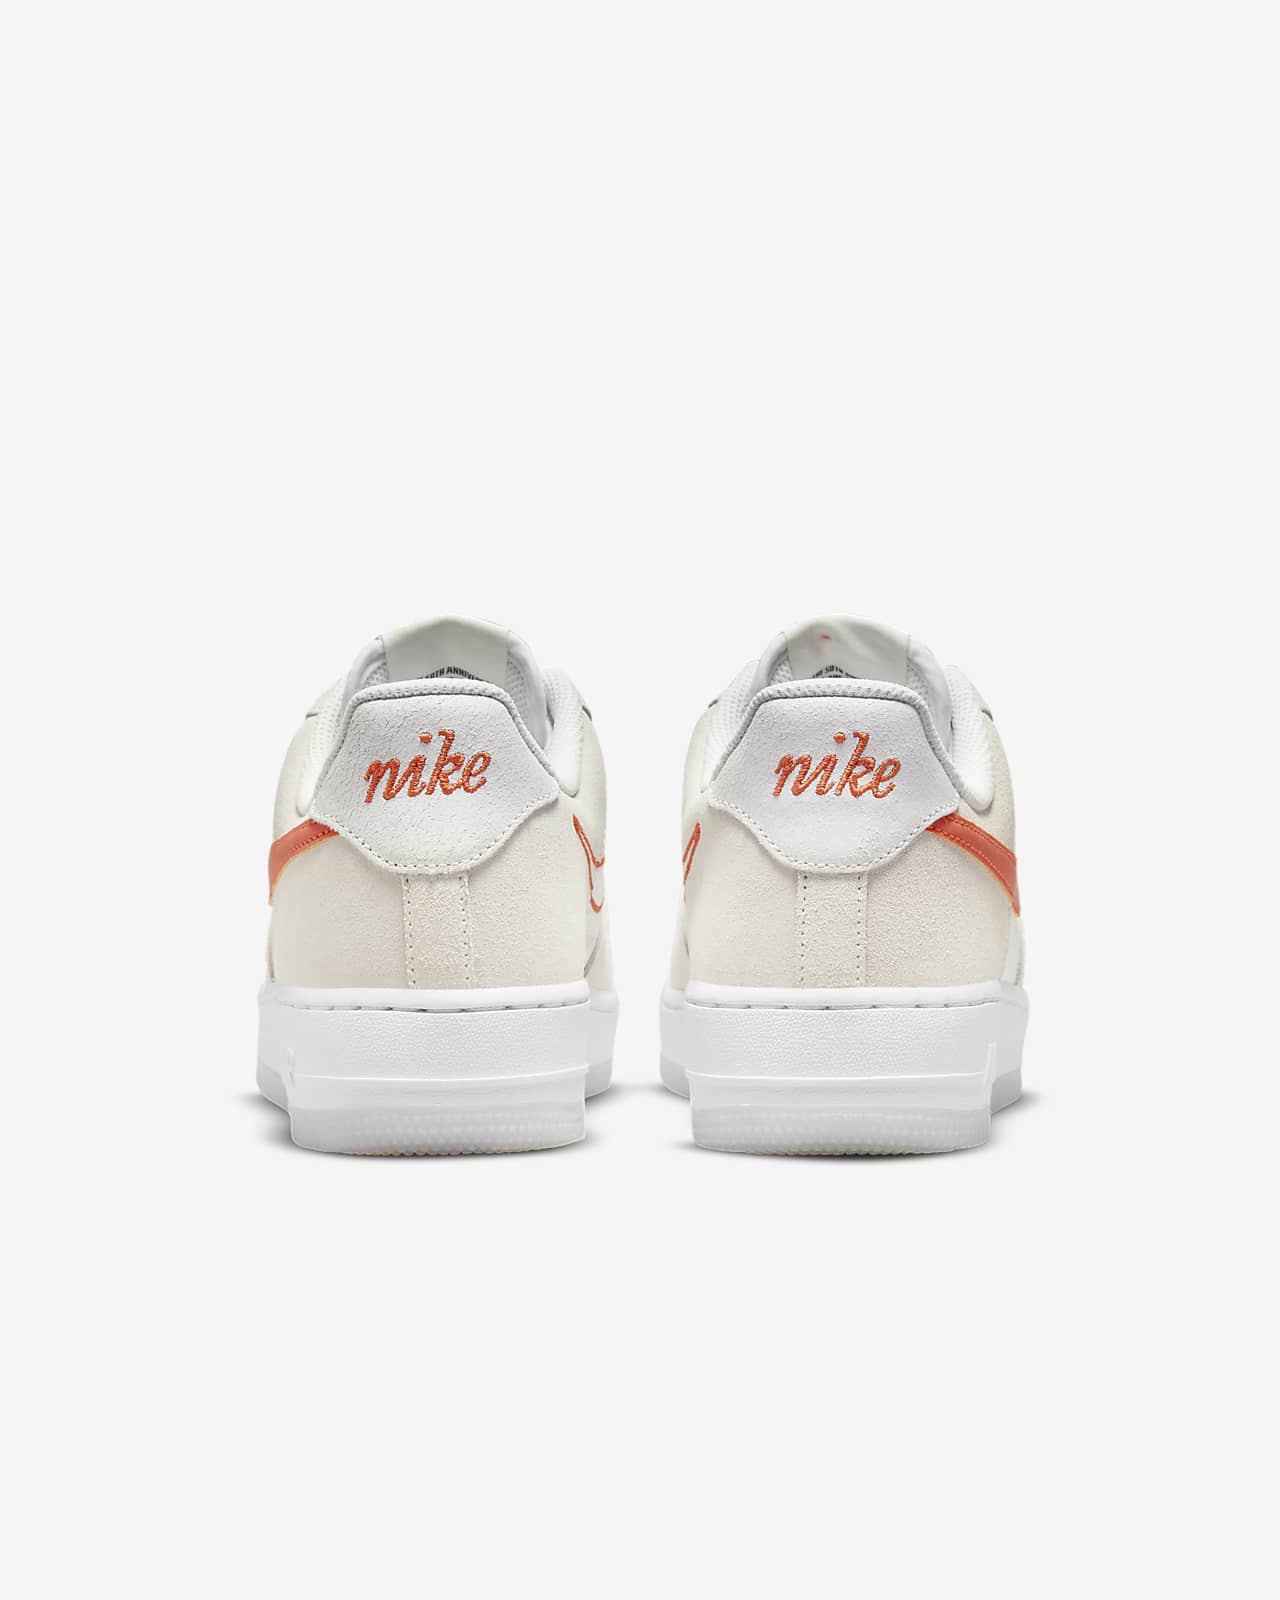 Nike Air Force 1 '07 SE Women's Shoe